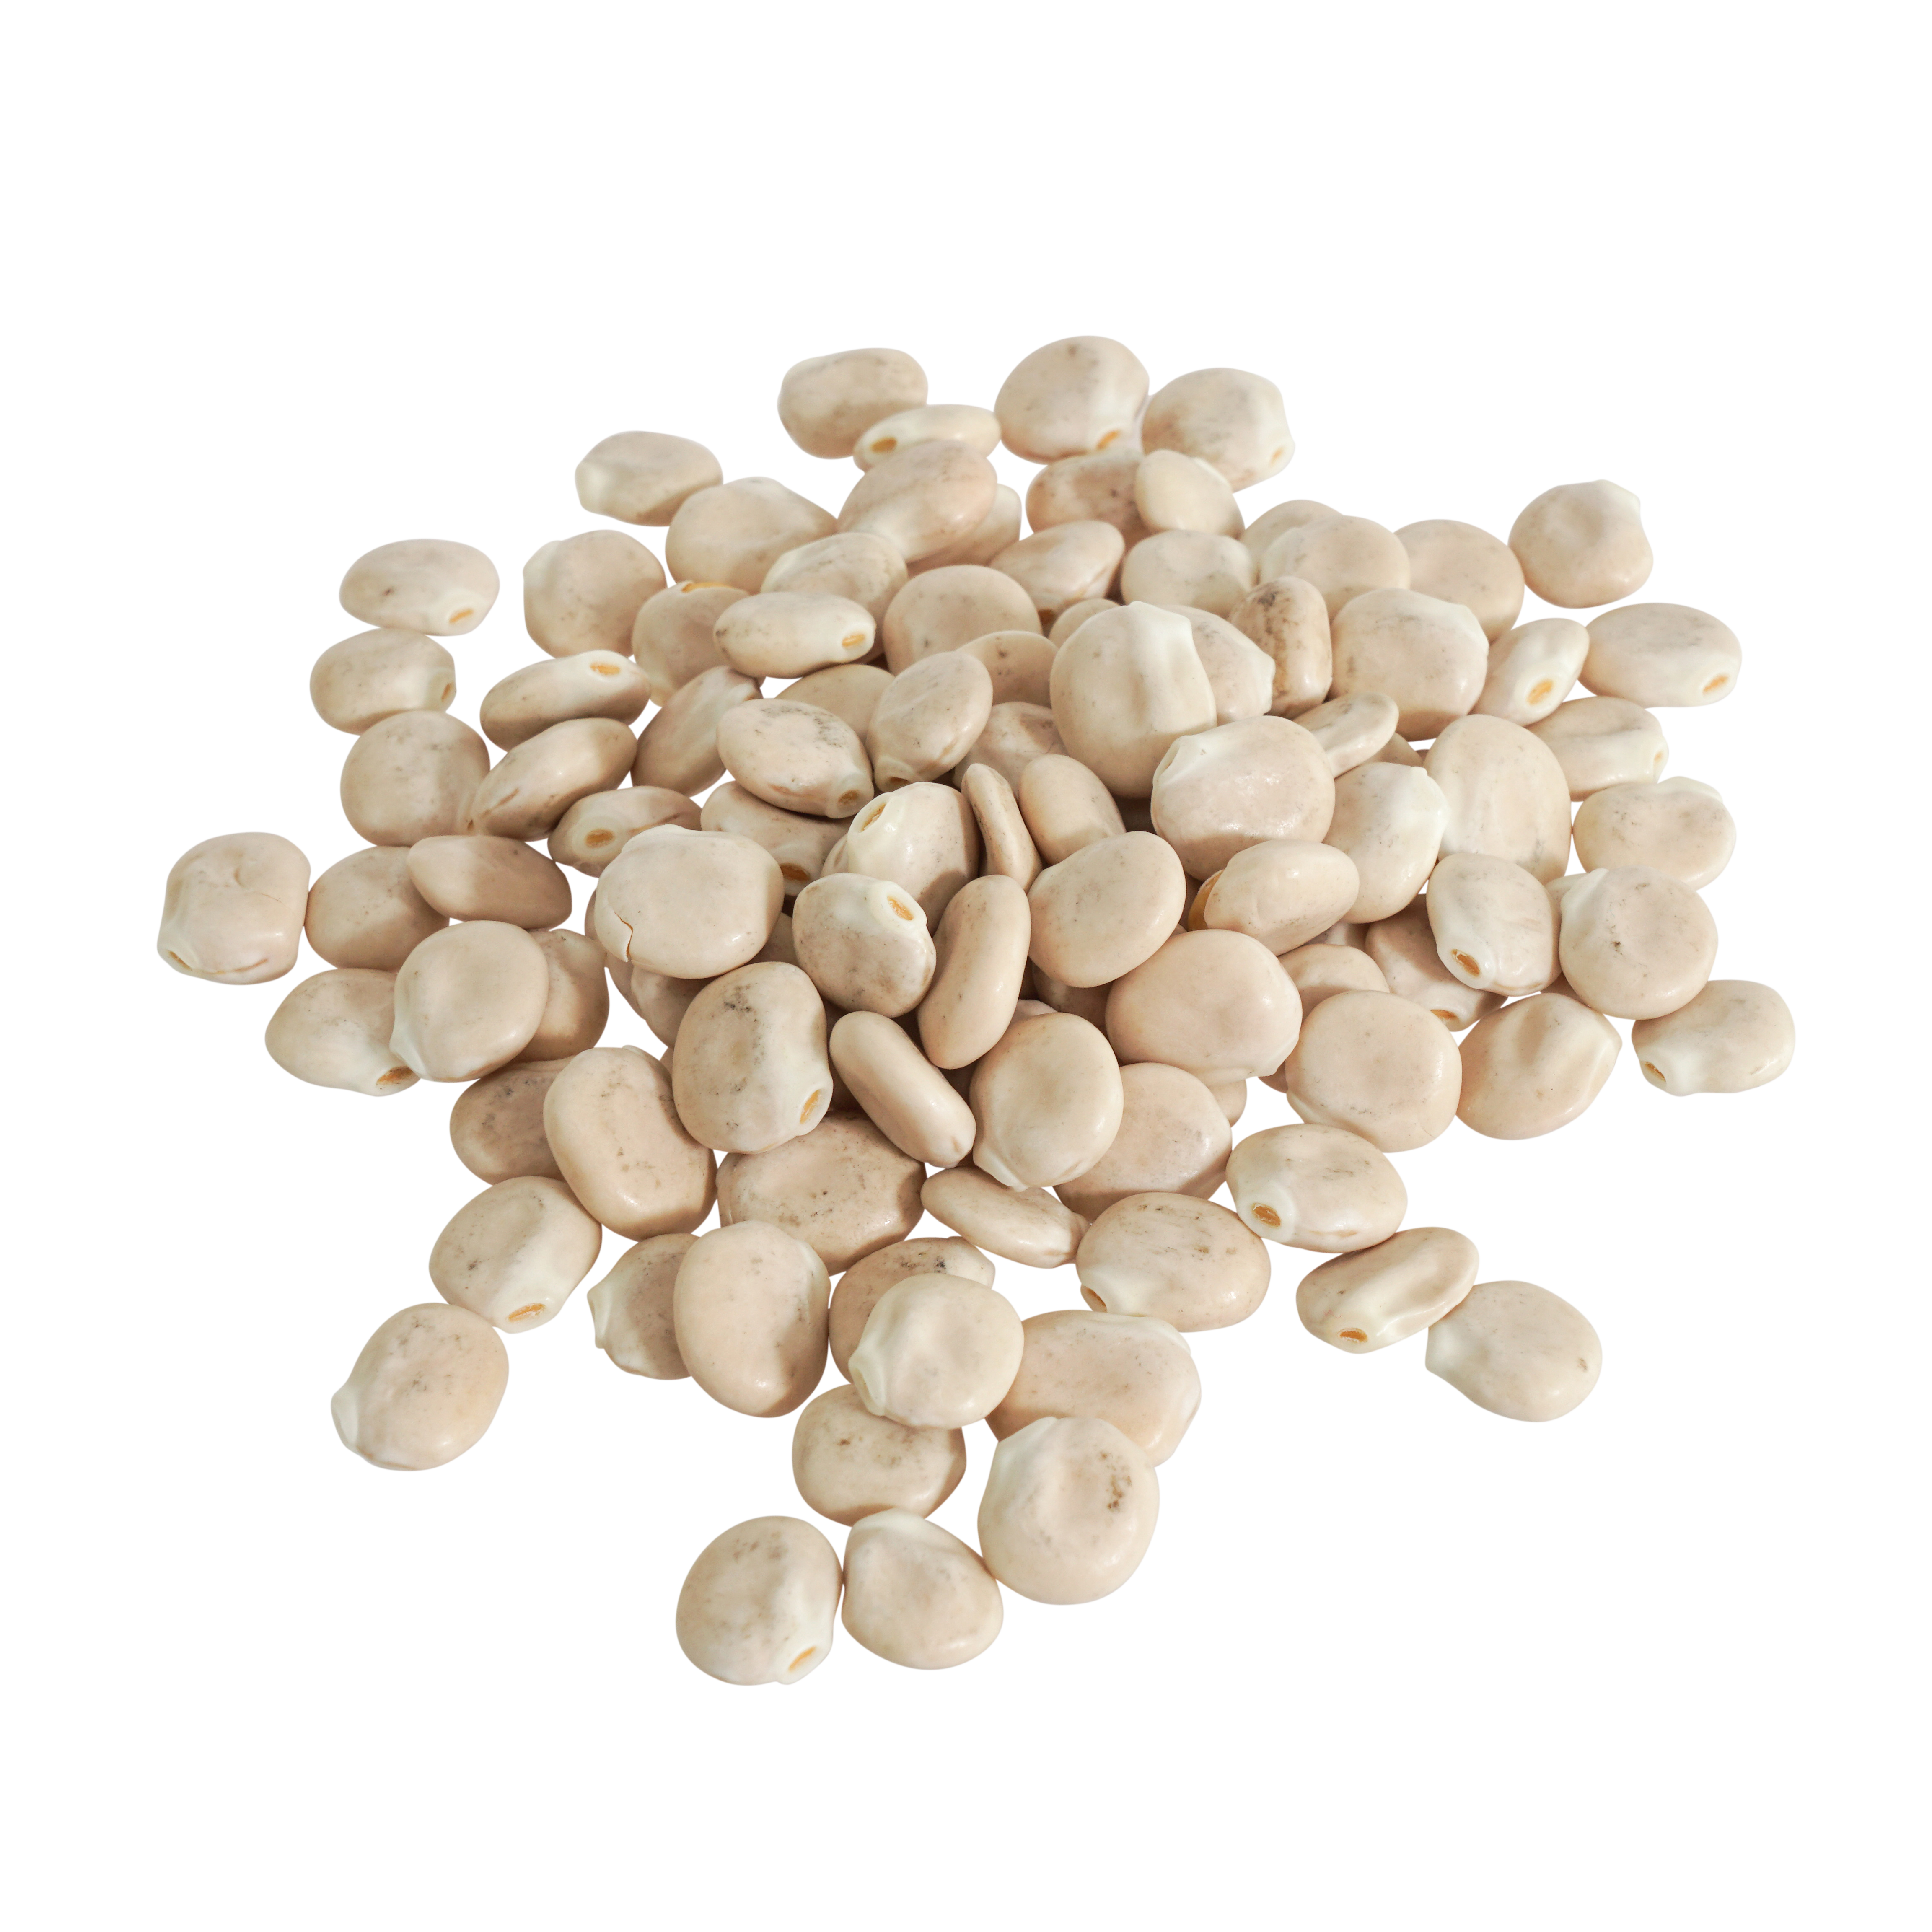 Weiße Lupinen Samen Bio 500 g